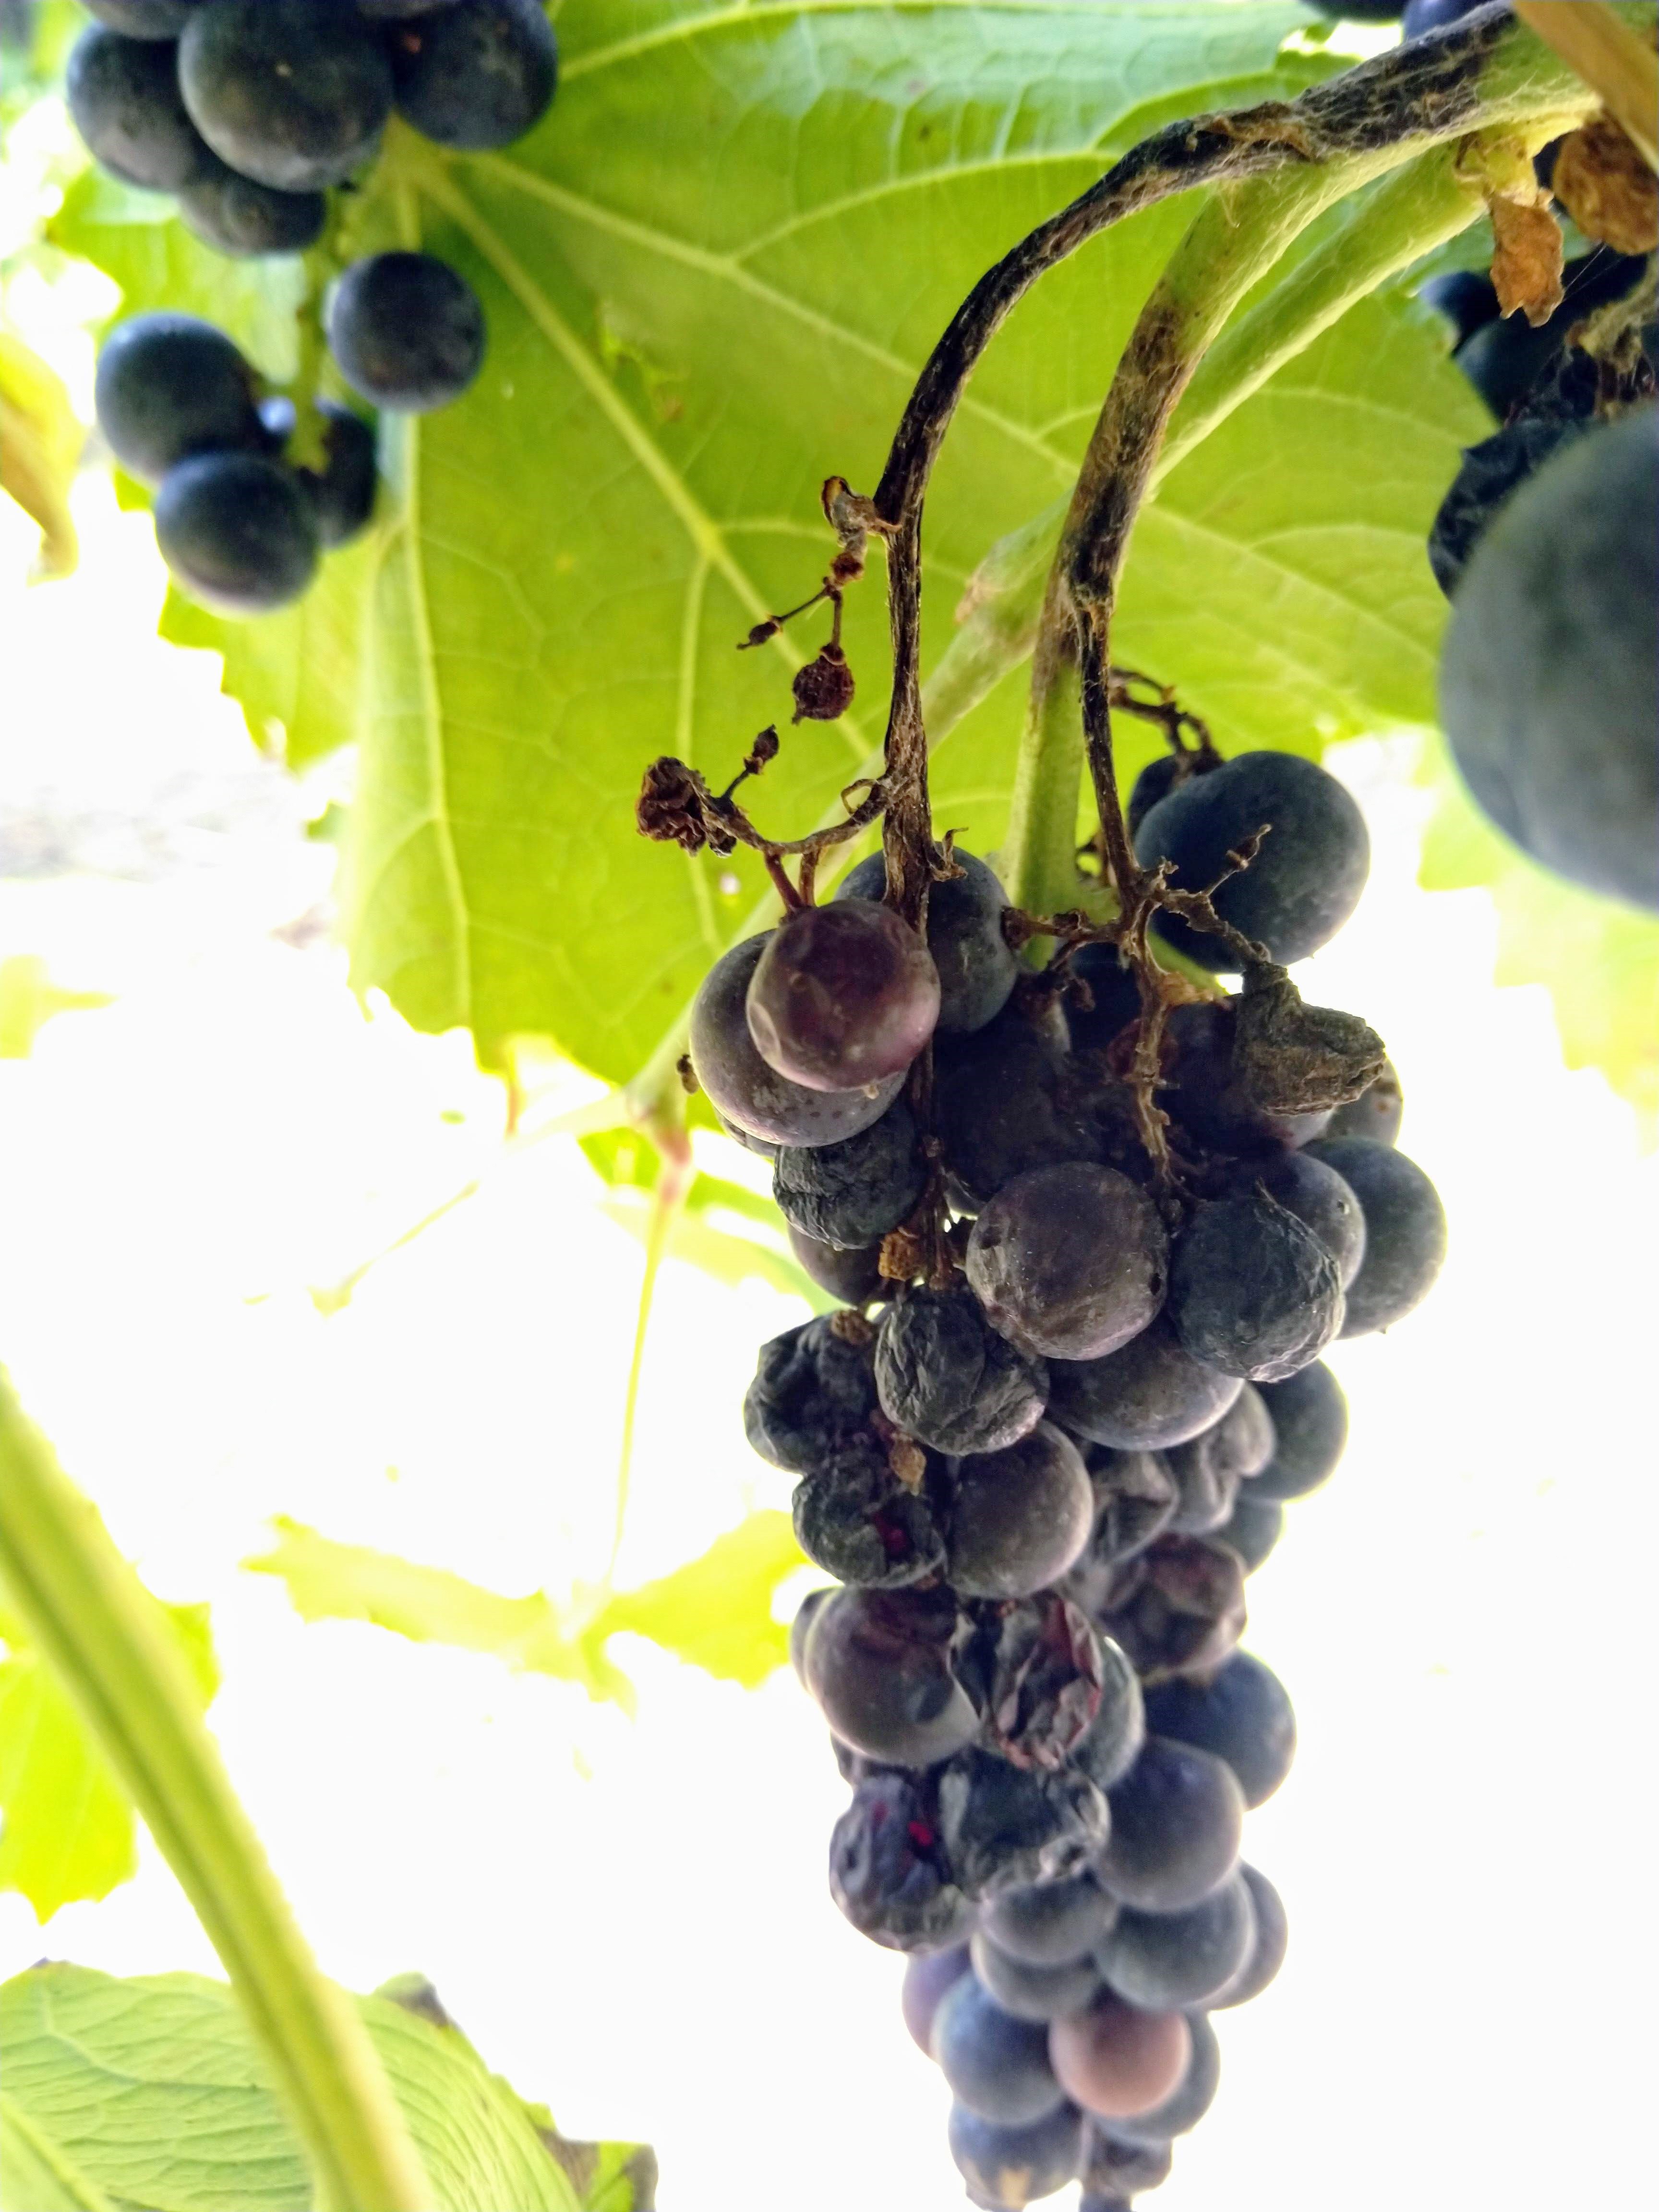 Shriveled grape cluster on the vine